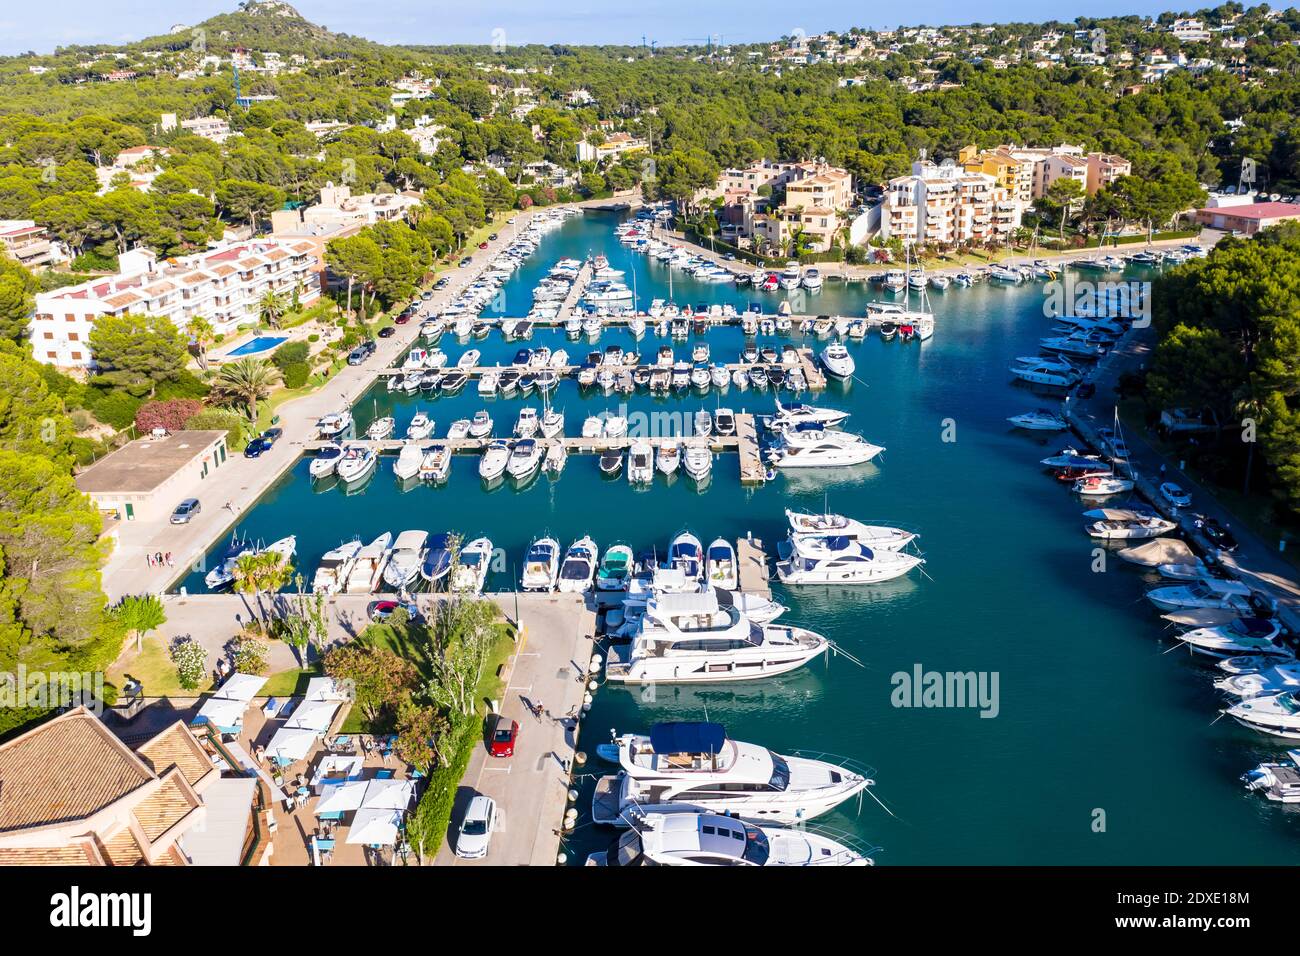 Aerial view of boats at marina of Santa Ponca, Mallorca Stock Photo